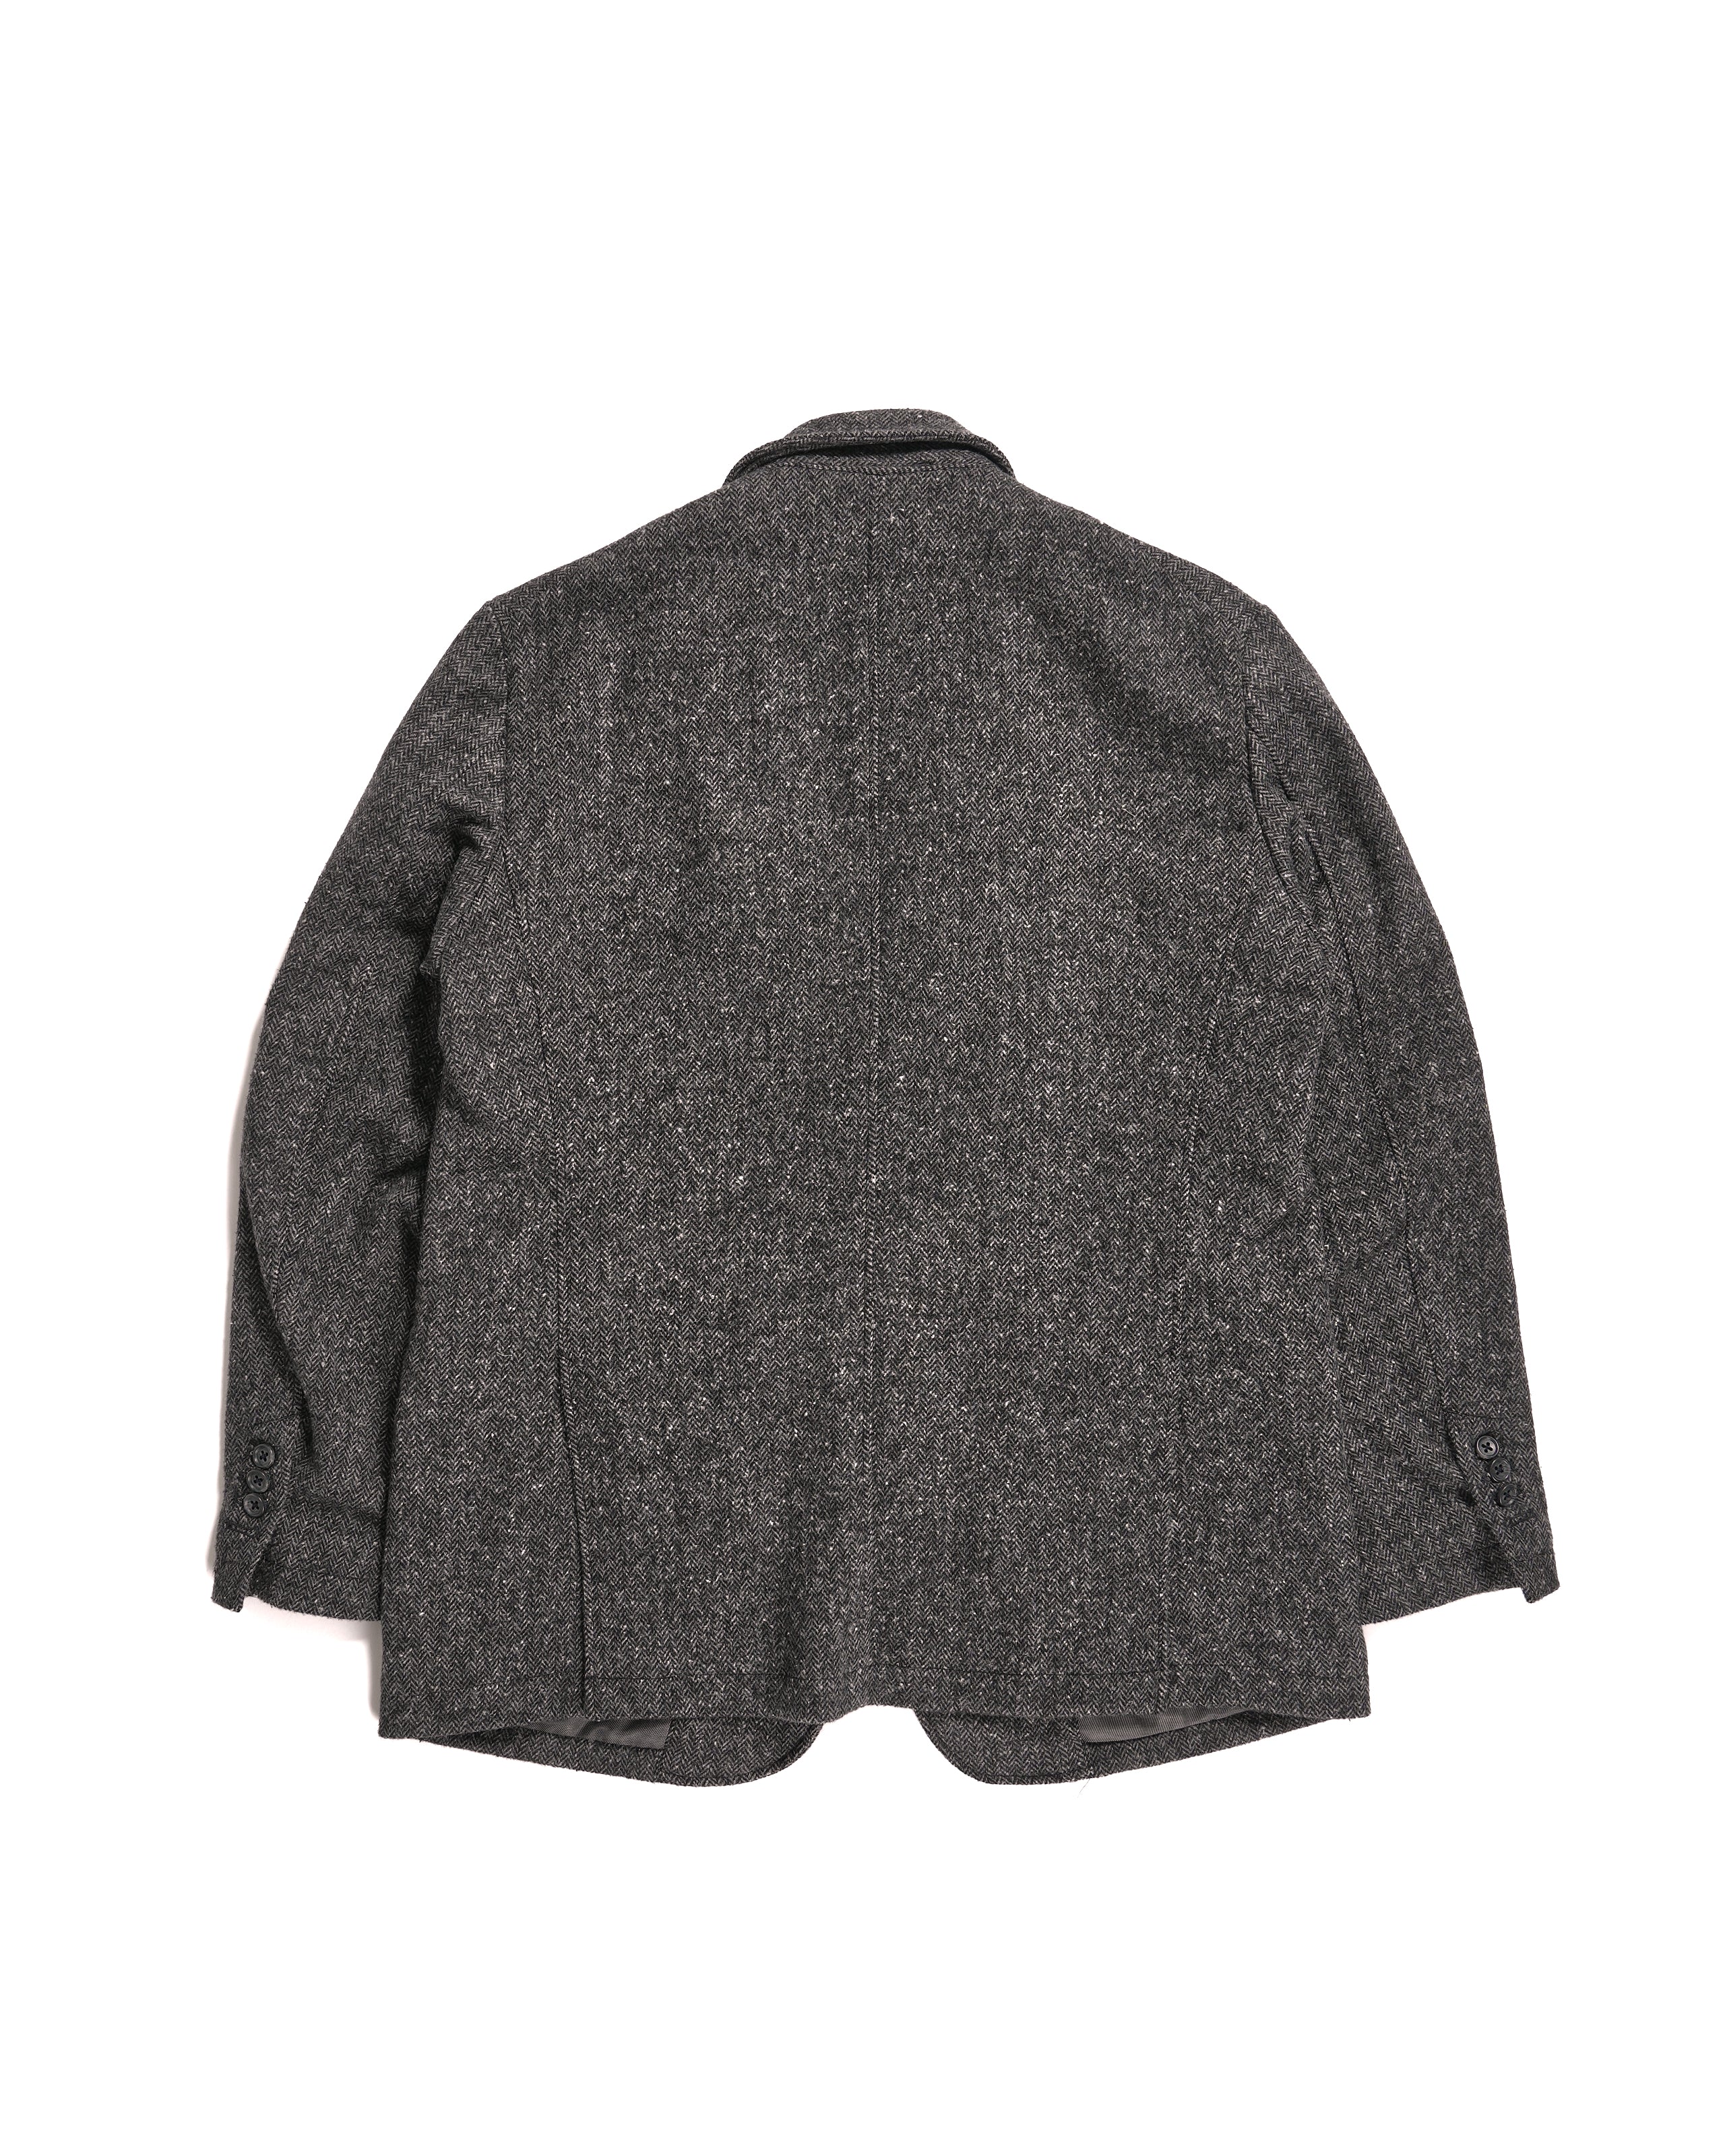 Andover Jacket - Grey Poly Wool Herringbone